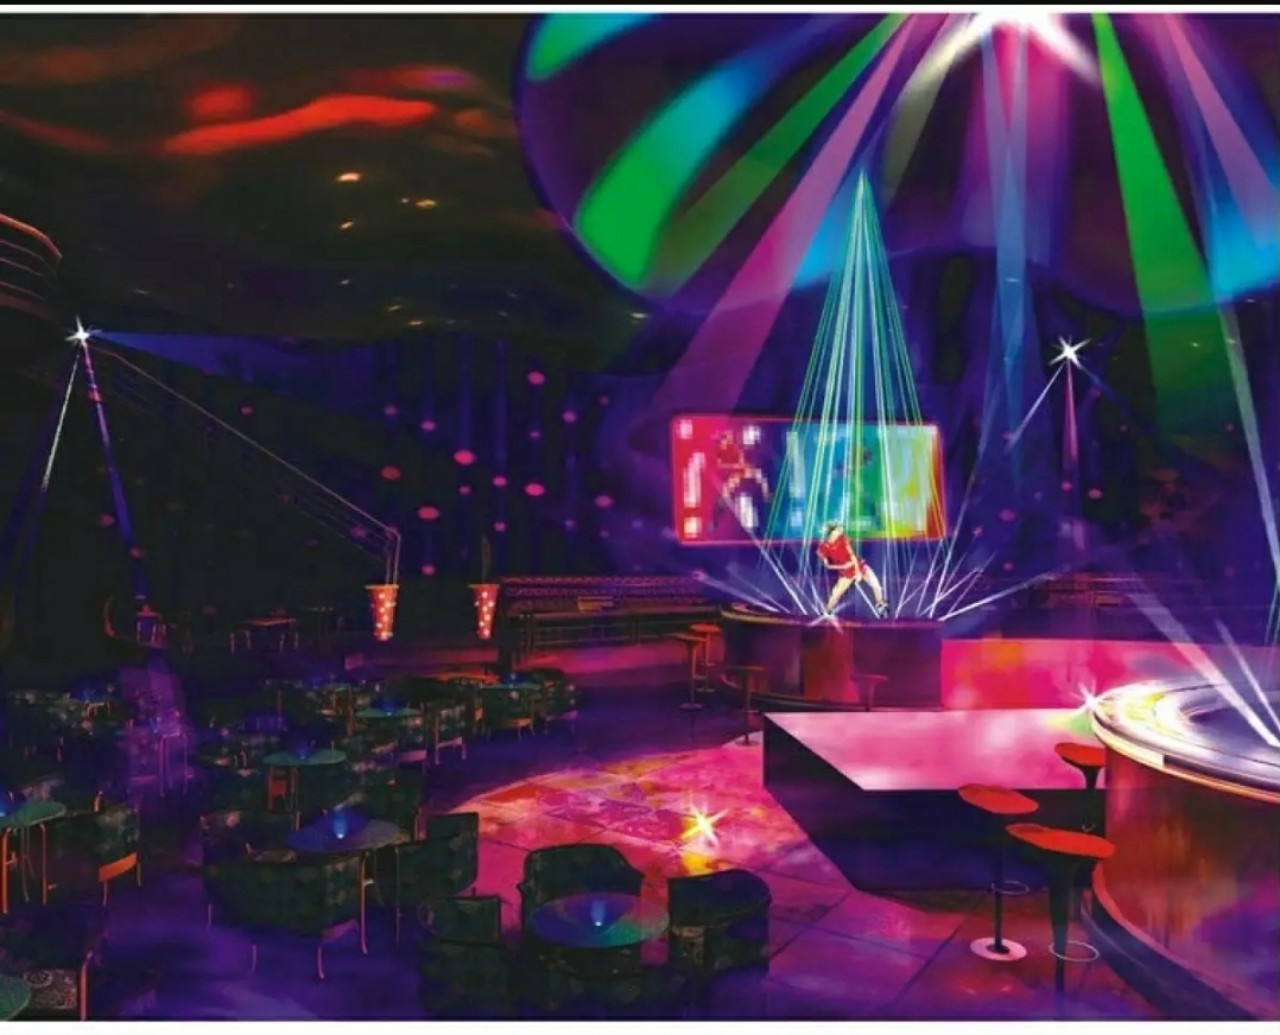 Đèn LED 7 màu vũ trường cảm ứng nhạc, đèn LED xoay 7 màu sân khấu chớp theo nhạc, Đèn nháy theo nhạc, đèn chớp 7 màu, đèn trang trí, đèn Led karaoke, đèn Led vũ trường, đèn cảm ứng âm thanh